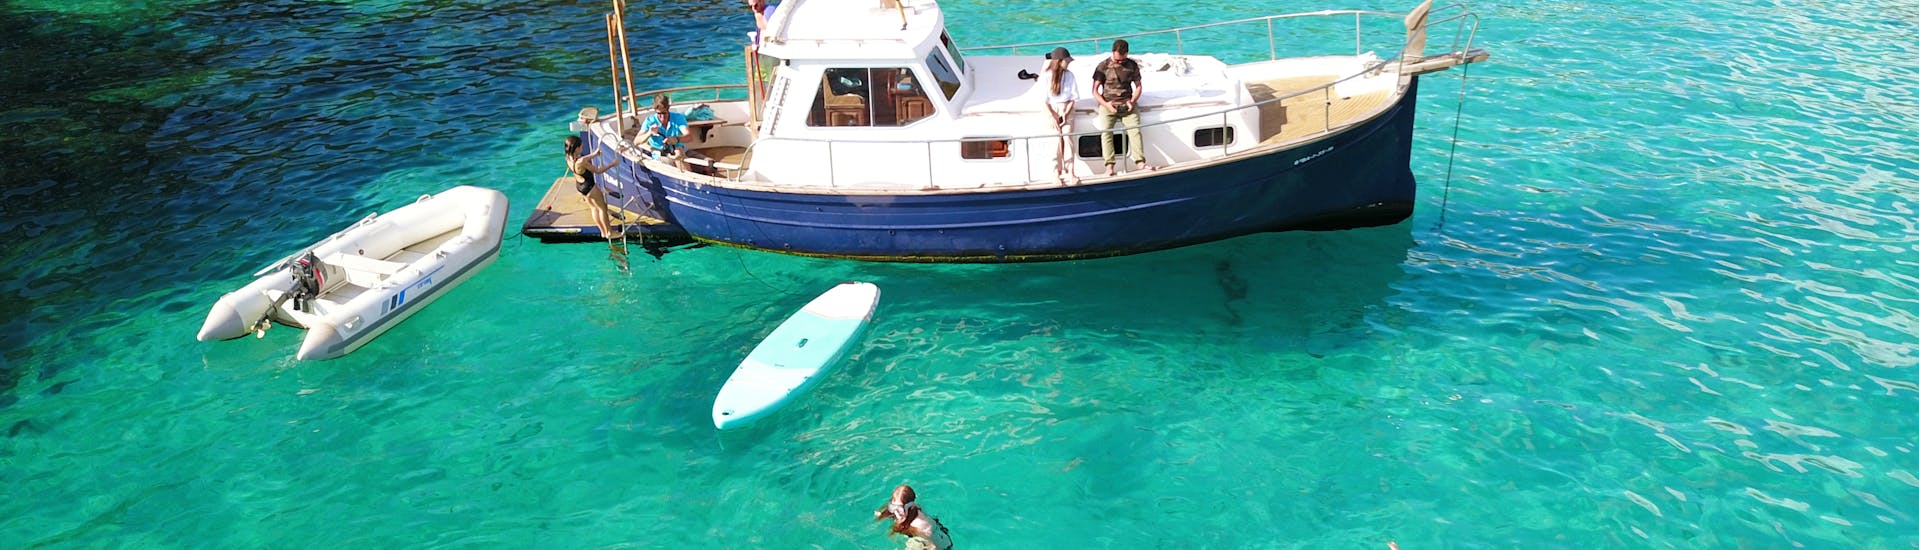 Des gens s'amusent au milieu de l'eau turquoise lors de la Balade privée en bateau depuis Cala Galdana avec Snorkeling & Stand-up paddle avec Marenostrum Menorca.